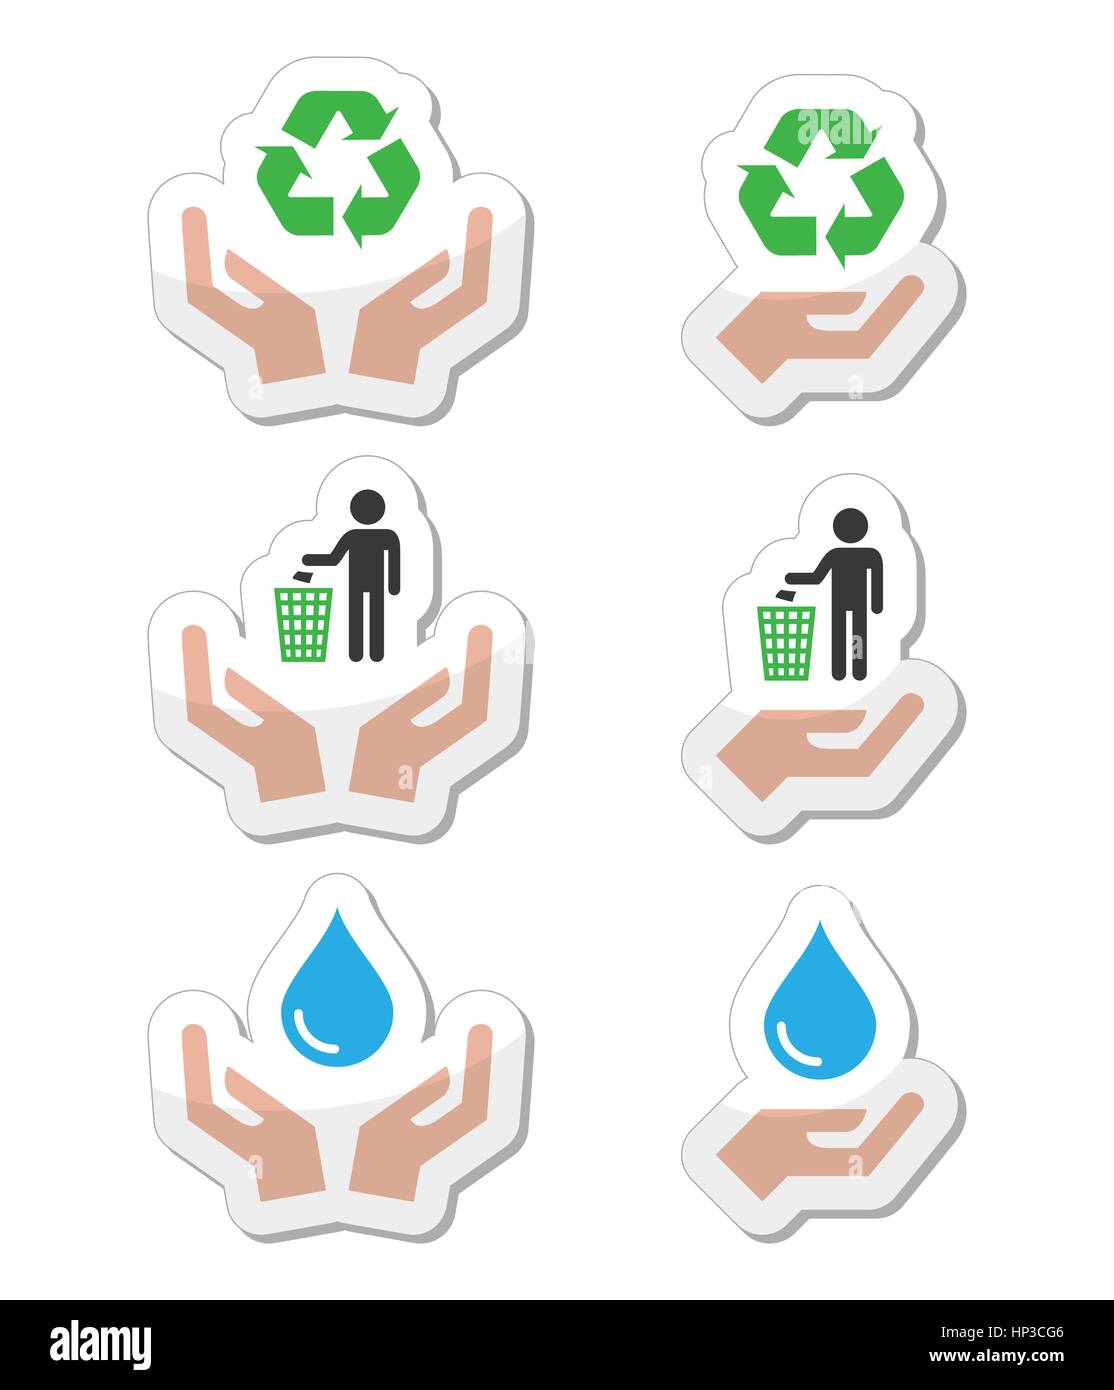 Les mains avec des symboles, de l'écologie verte icons set. Eco Vector icons set isolated on white - recyclage, ecology concept Illustration de Vecteur